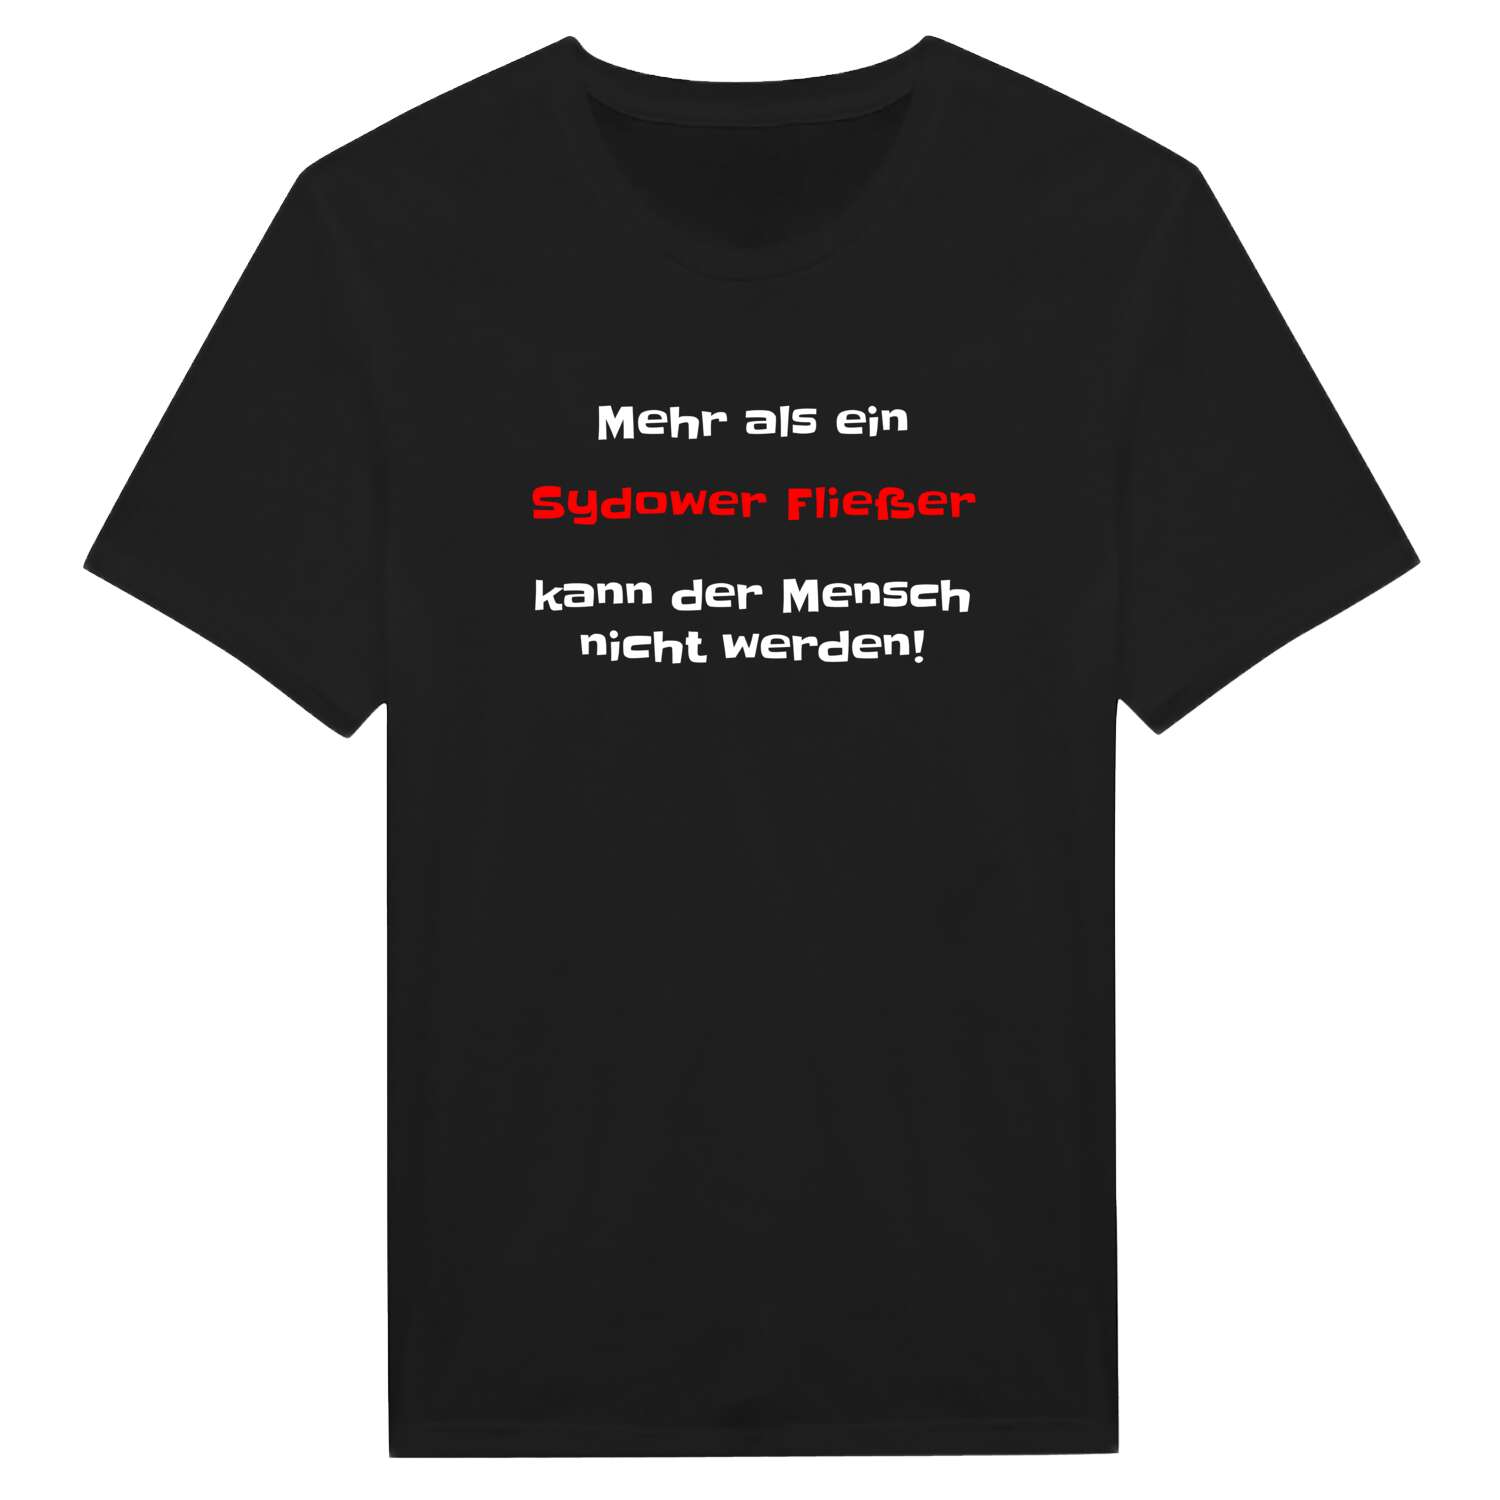 Sydower Fließ T-Shirt »Mehr als ein«